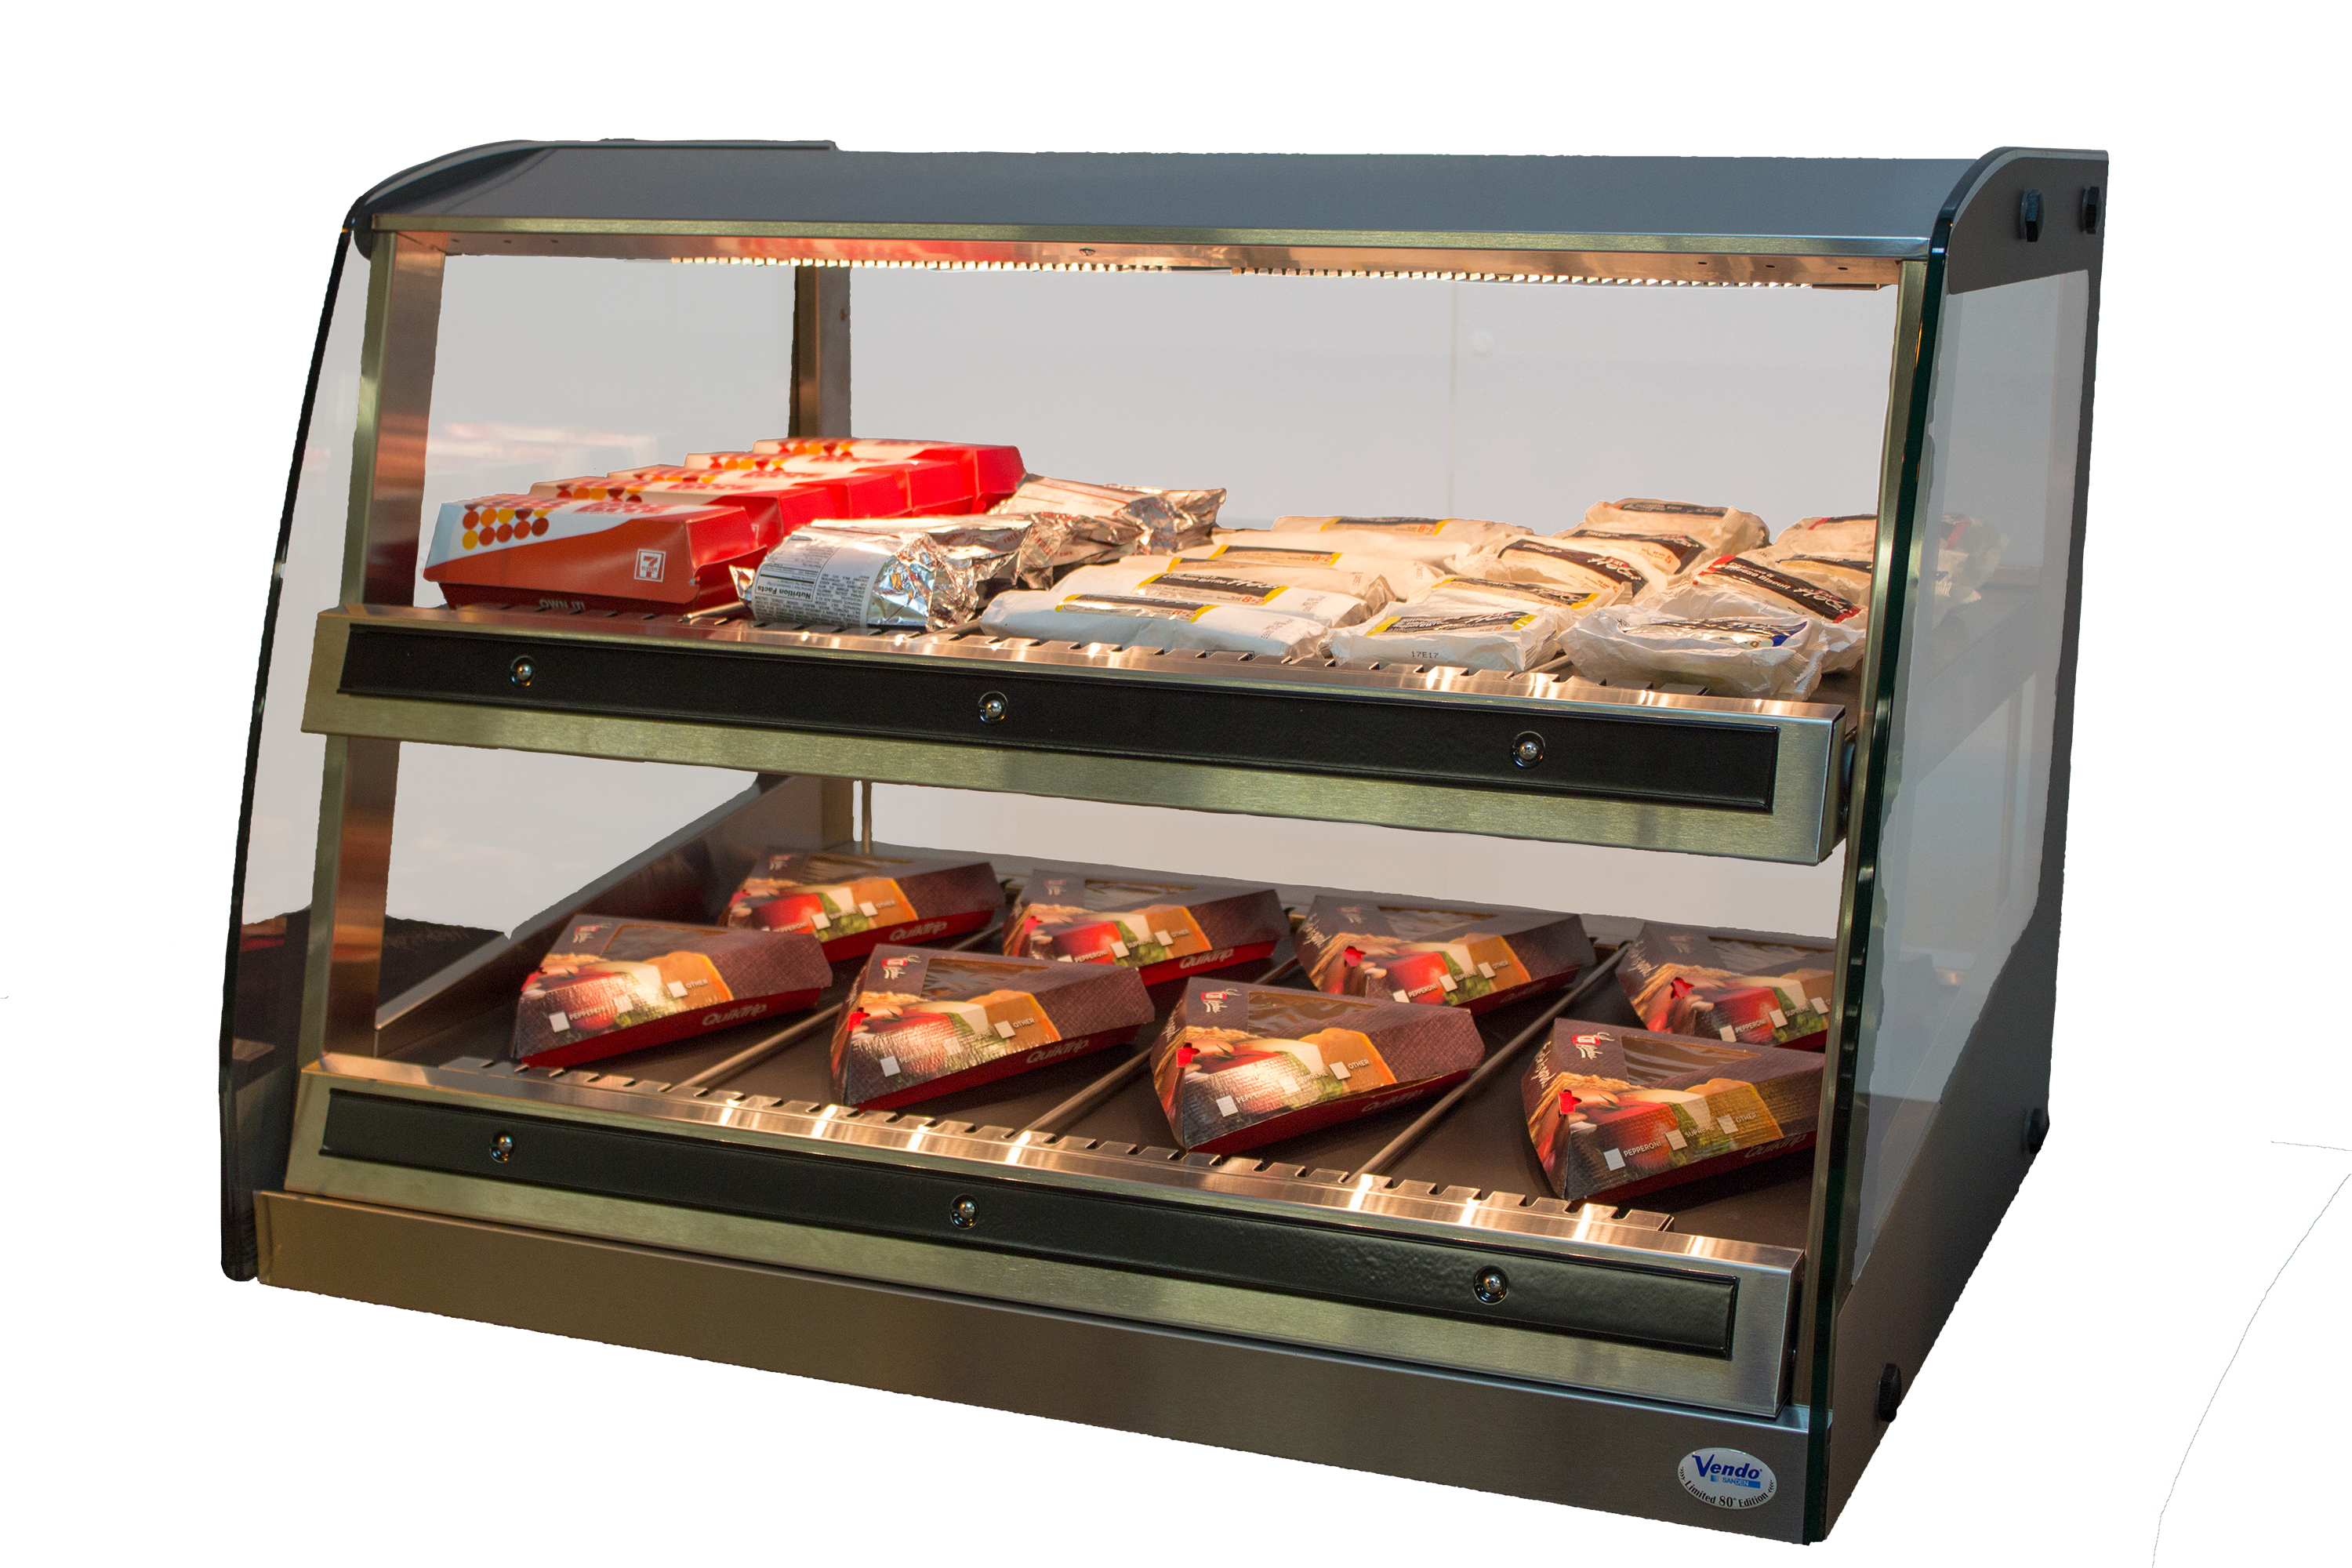 Sanden-Vendo Hot Food Display Case